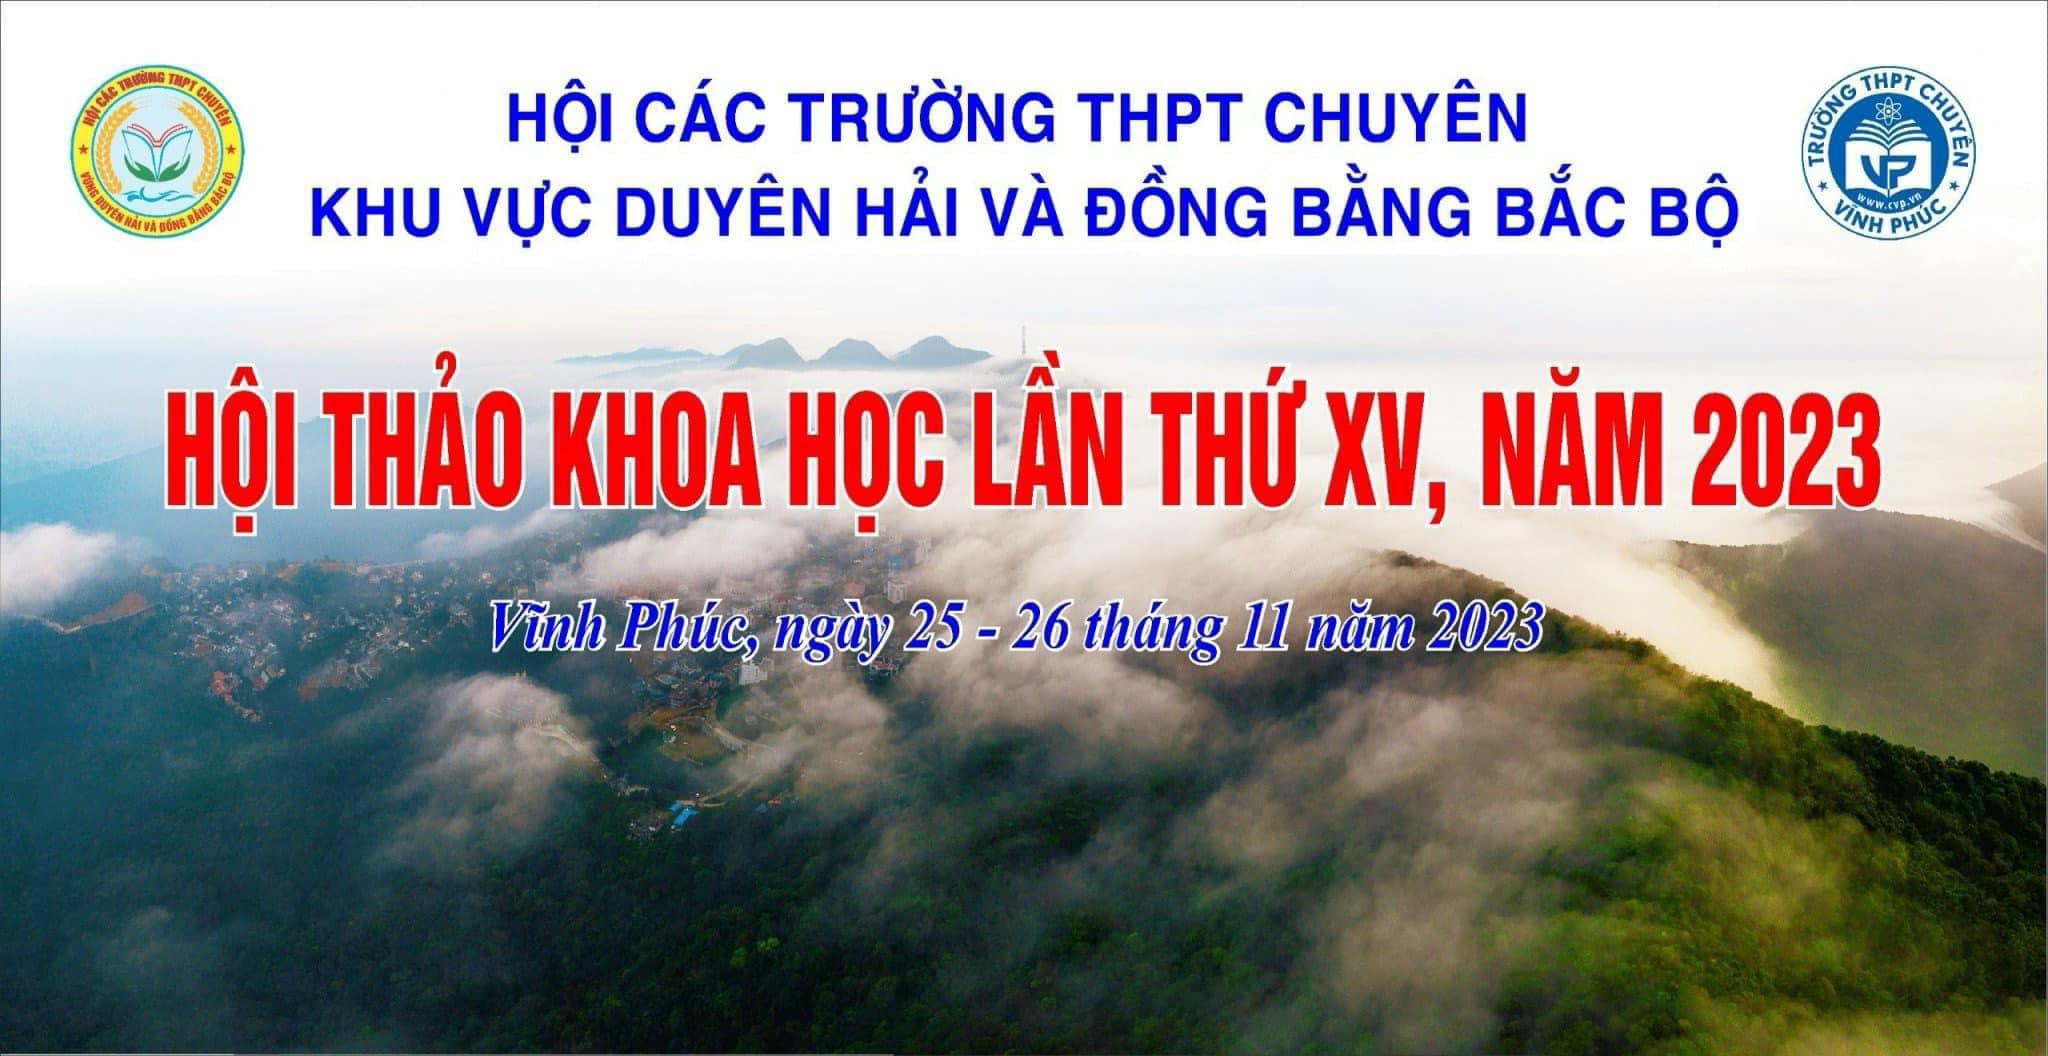 Trường THPT chuyên Lê Hồng Phong tham gia Hội thảo khoa học các trường THPT Chuyên khu vực Duyên hải và Đồng bằng Bắc Bộ lần thứ XV